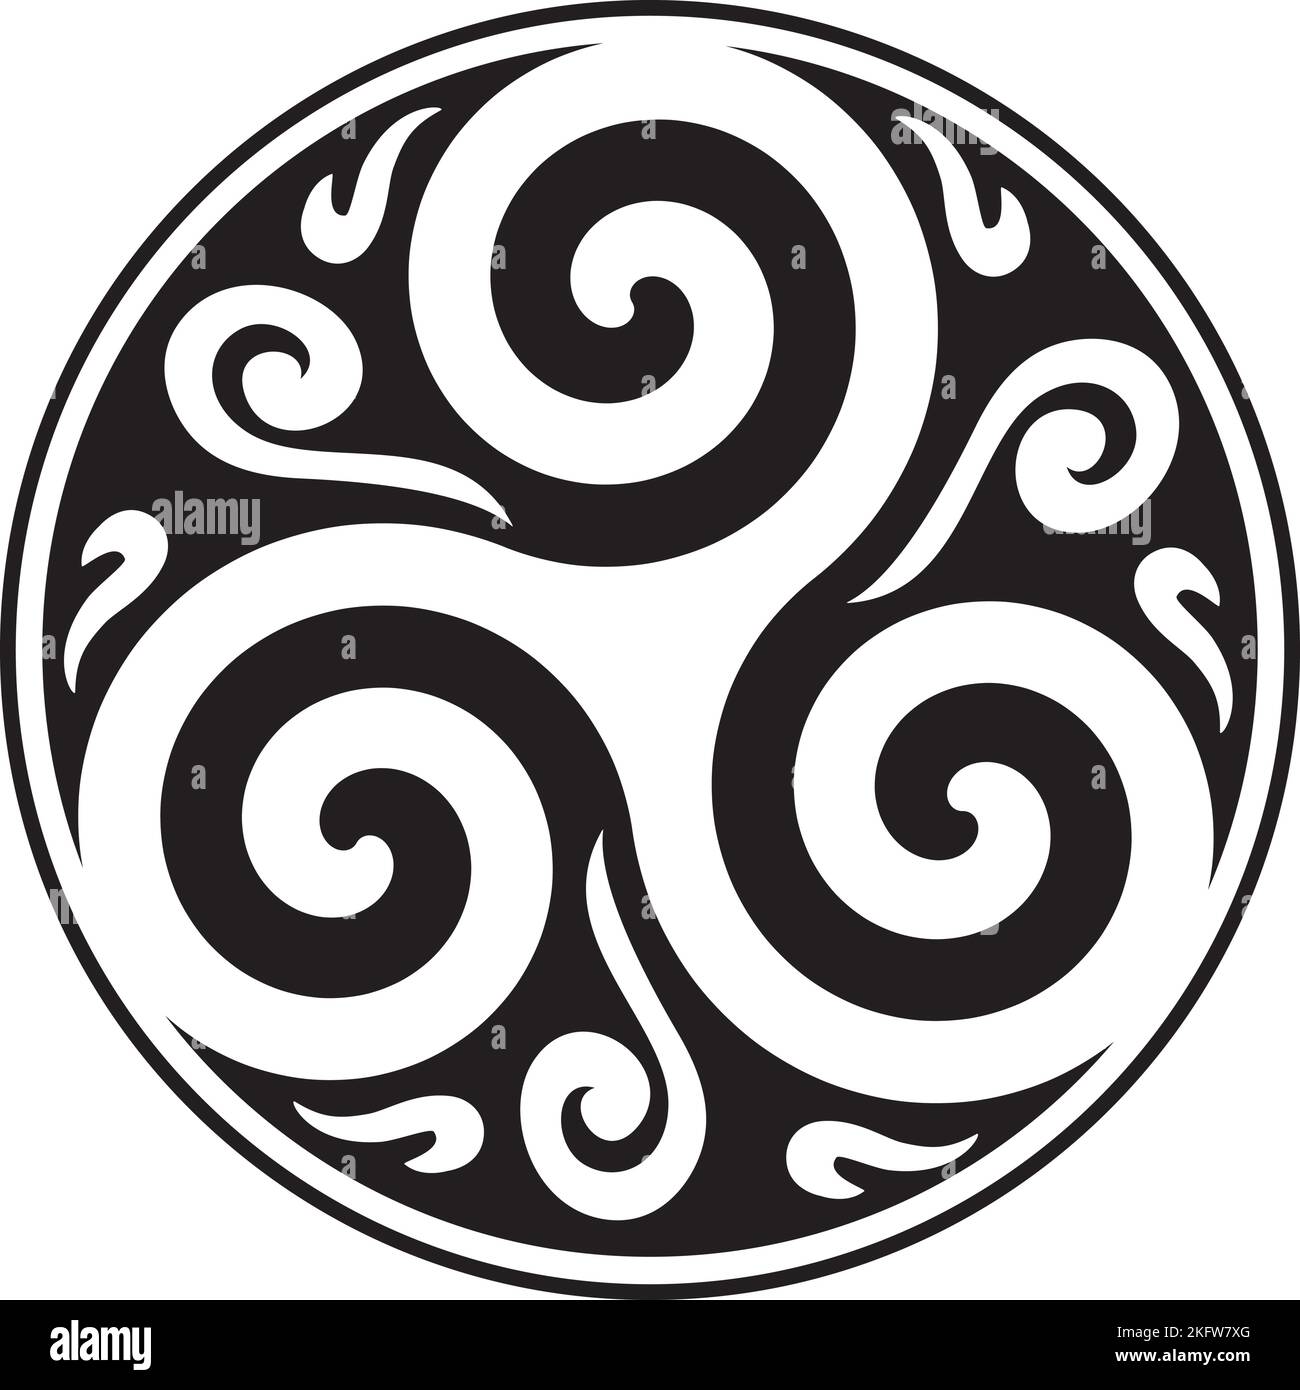 Keltischer Knoten und Triskelion Kreis - keltisches Symbol - Dreifaltigkeit - Heilige Geometrie - Energie Stock Vektor